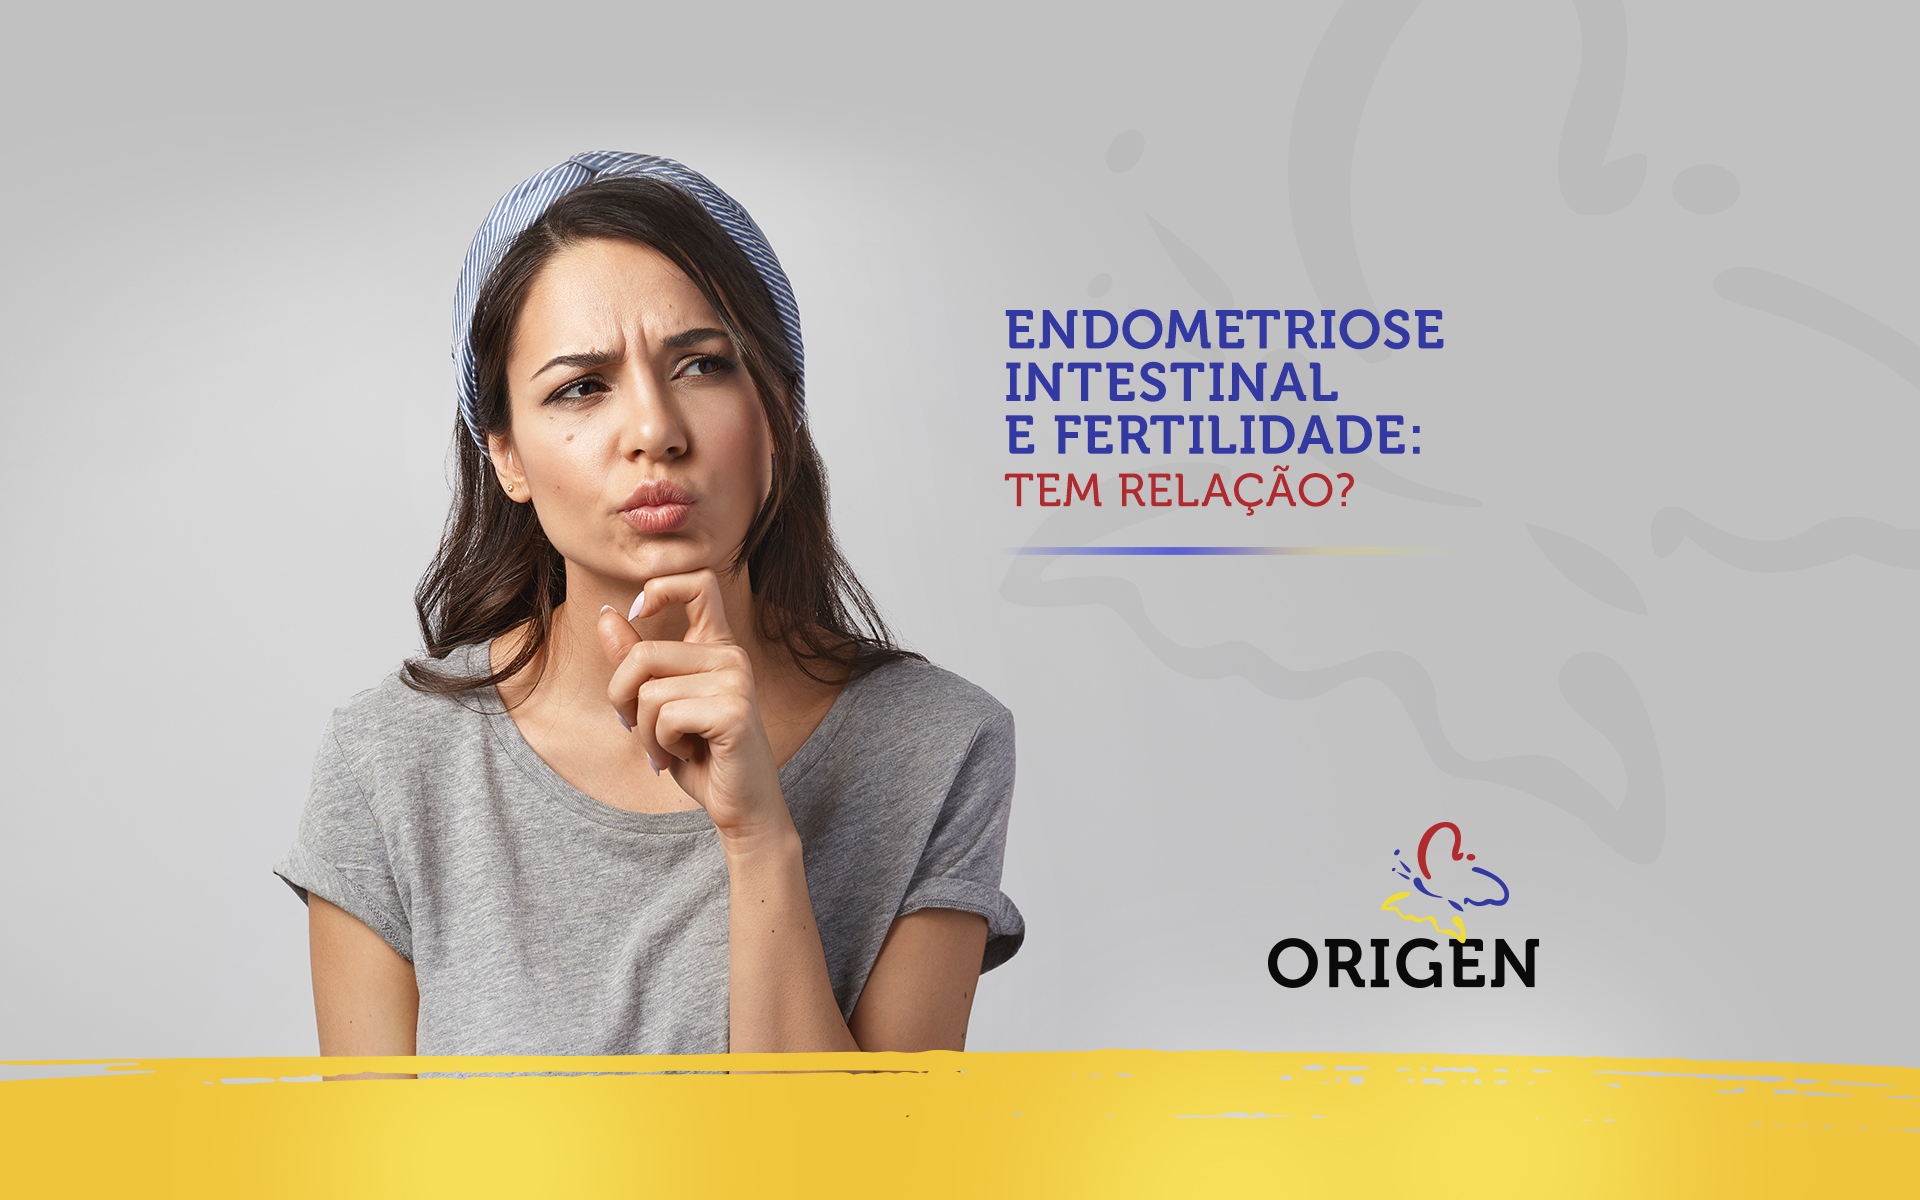 Endometriose intestinal e fertilidade: tem relação?